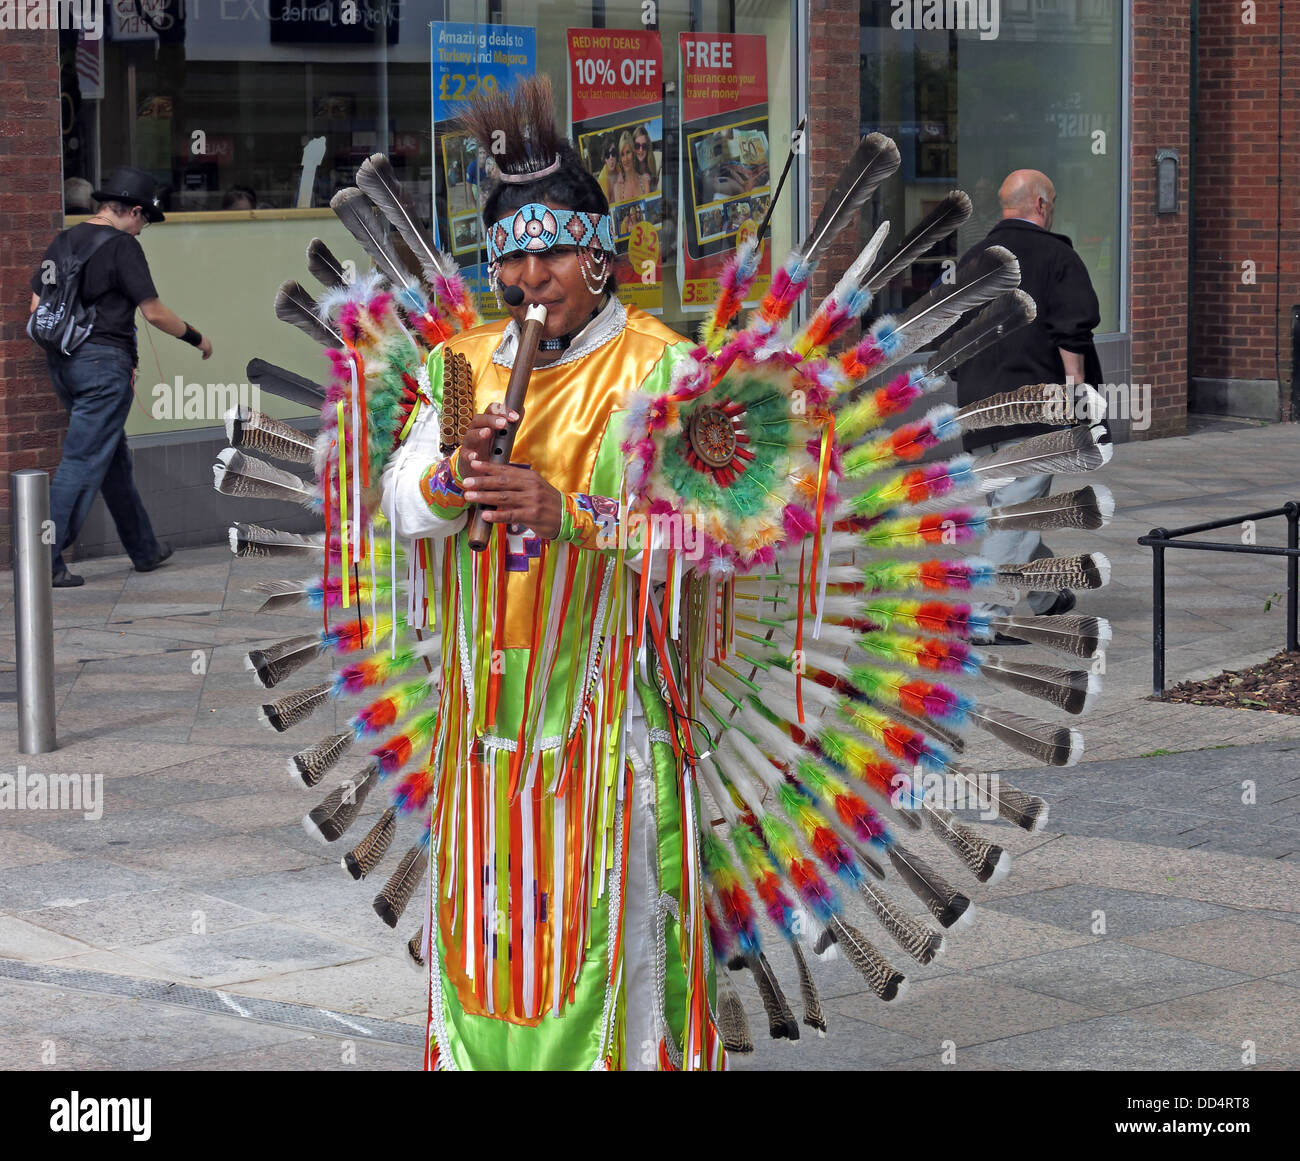 Les amuseurs publics d'Amérique du Sud péruvien / artistes dans le centre-ville de Warrington , Cheshire , Angleterre , Royaume-Uni Banque D'Images